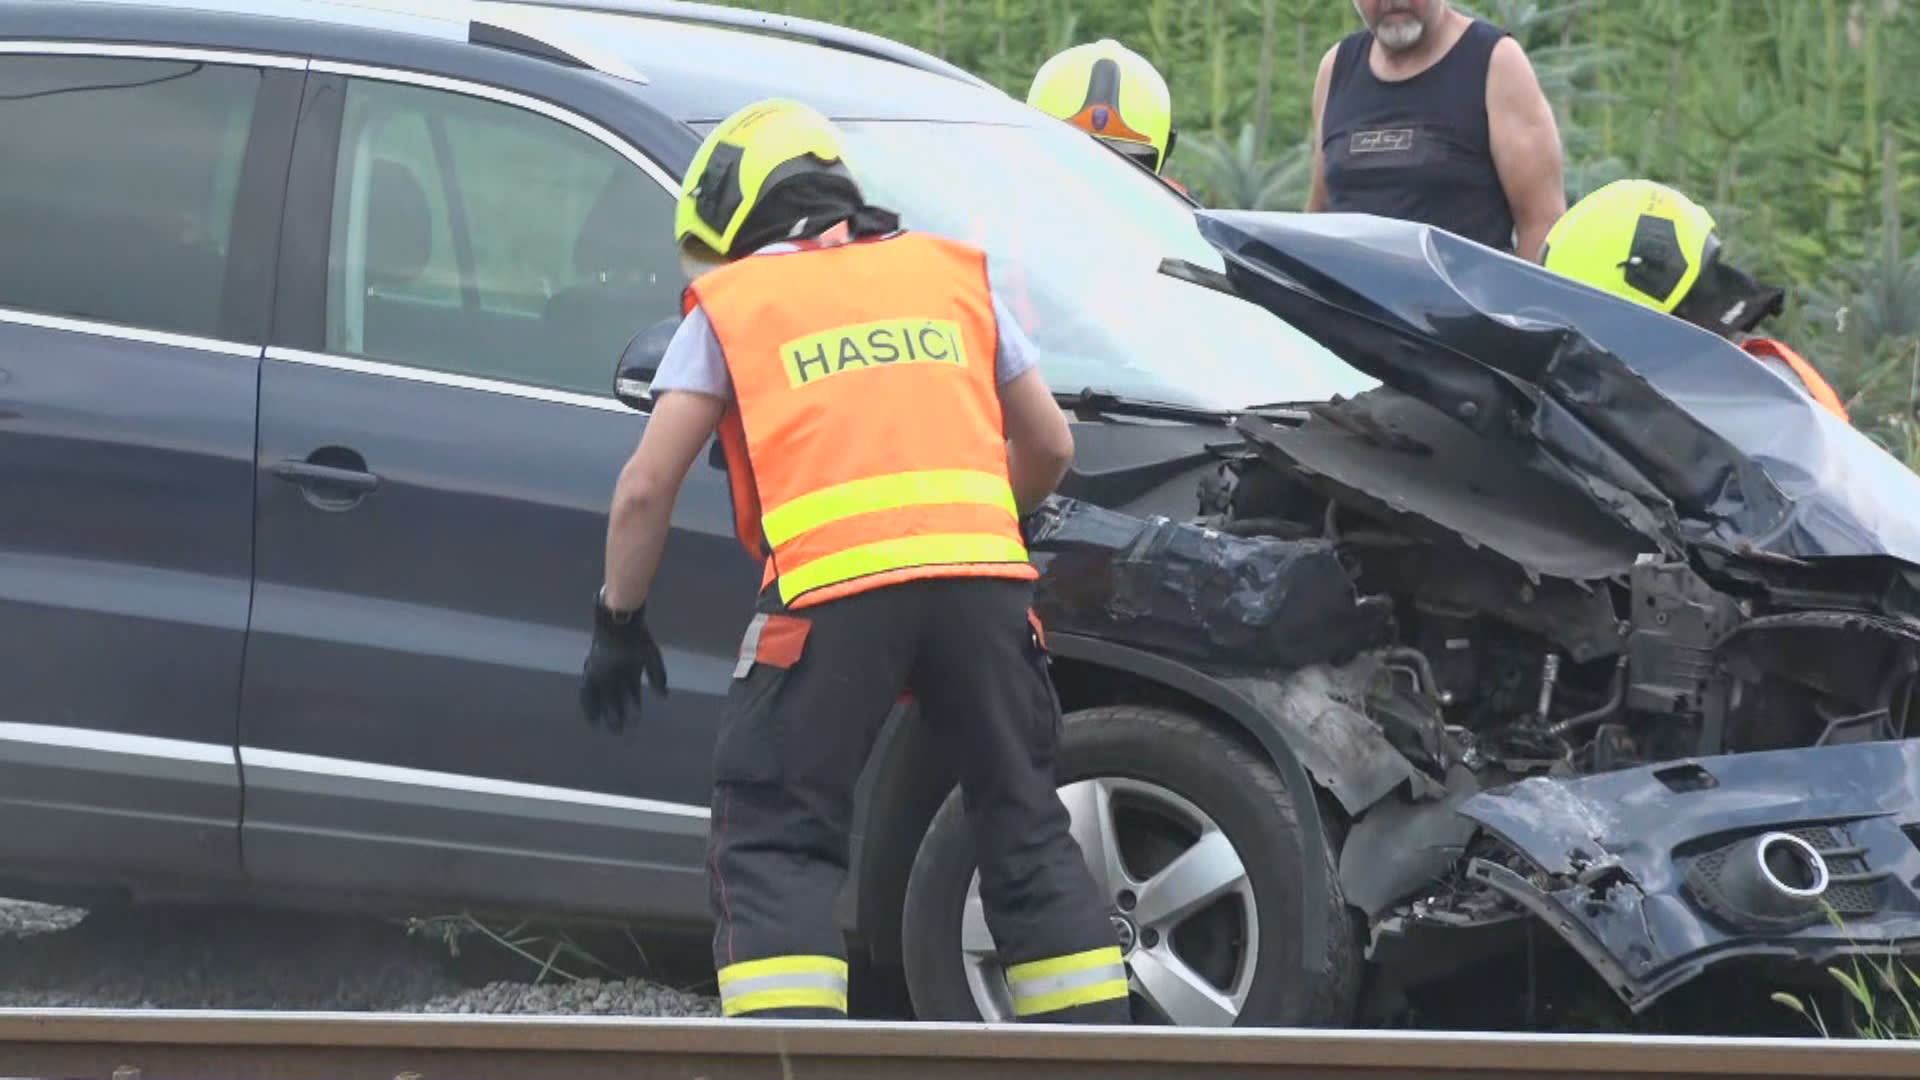 V Ropici na Třinecku došlo k další nehodě osobního auta s vlakem.